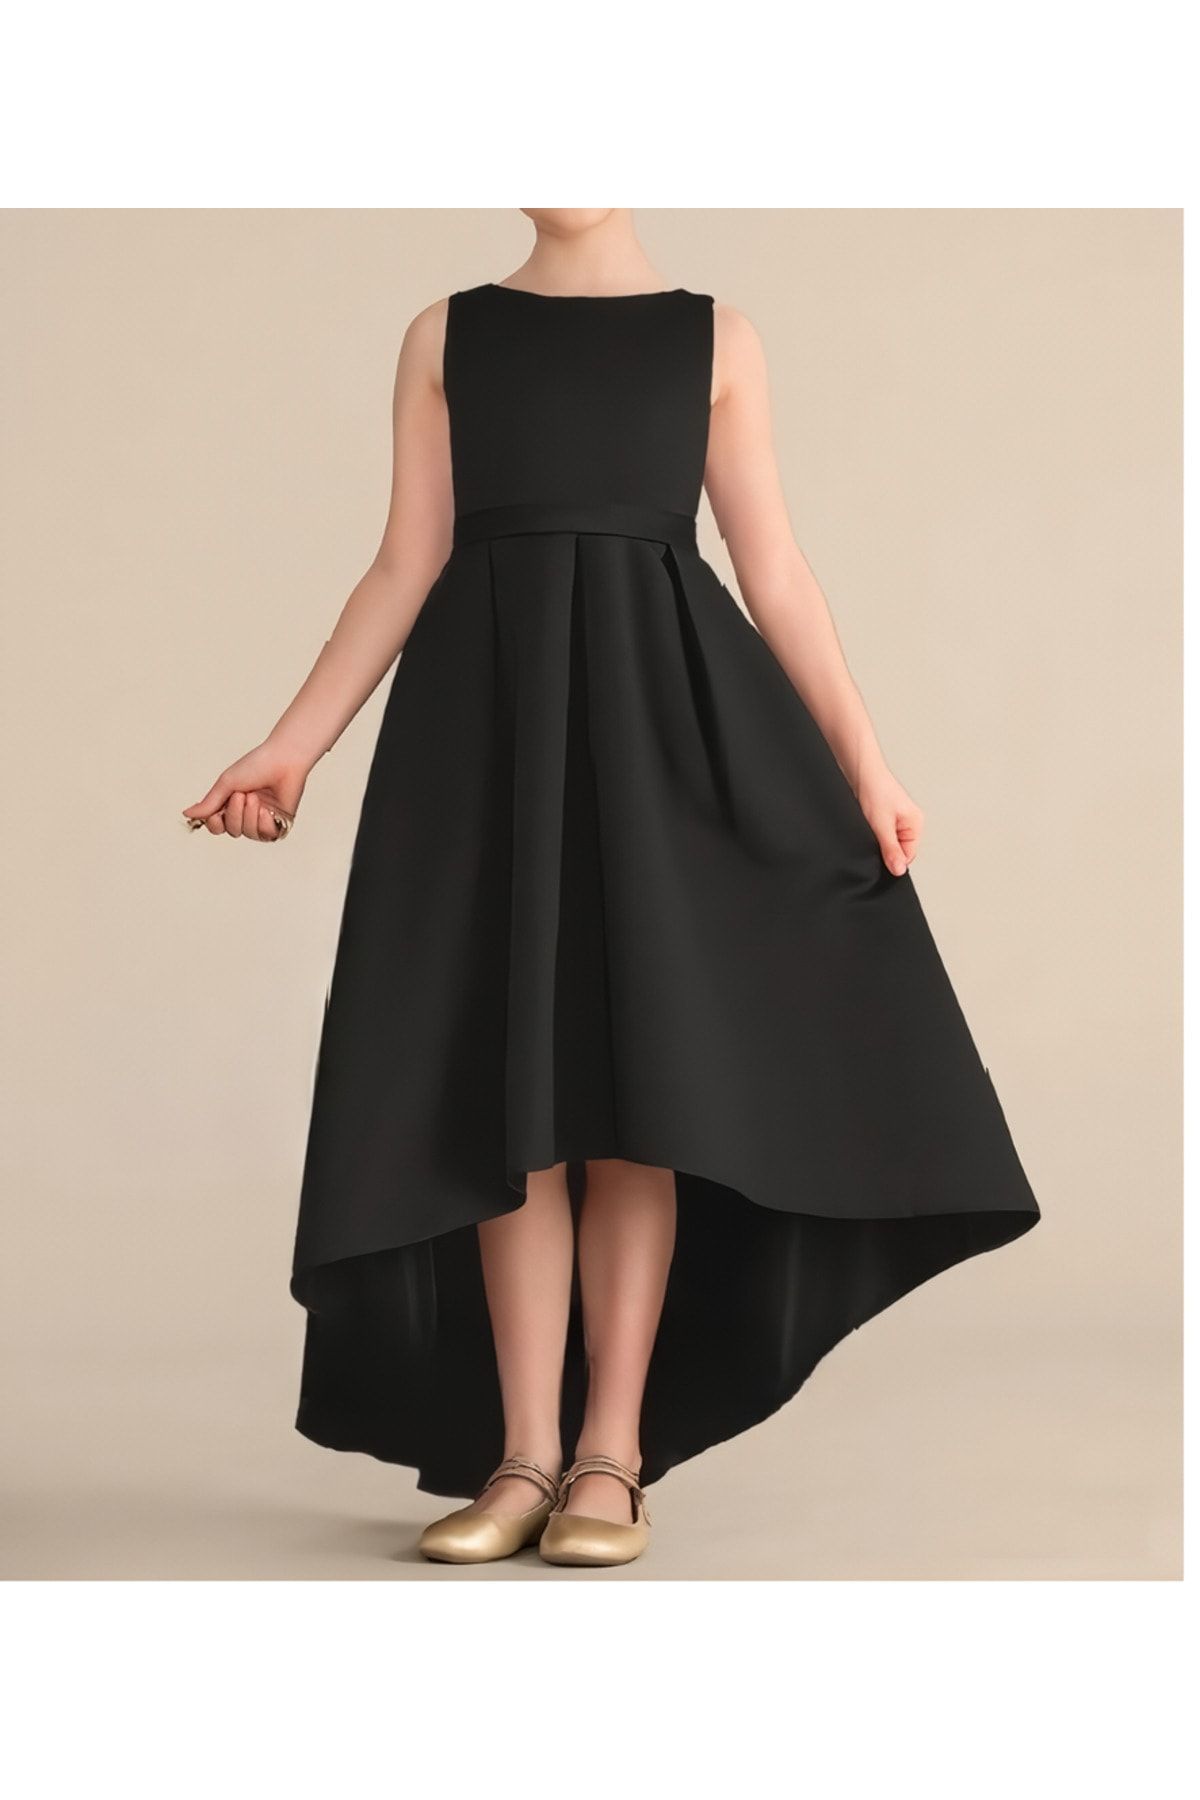 nsmkidslife Kız Çocuk Siyah Asimetrik Etek Detaylı Sade Şık Saten Mezuniyet Balo Elbisesi